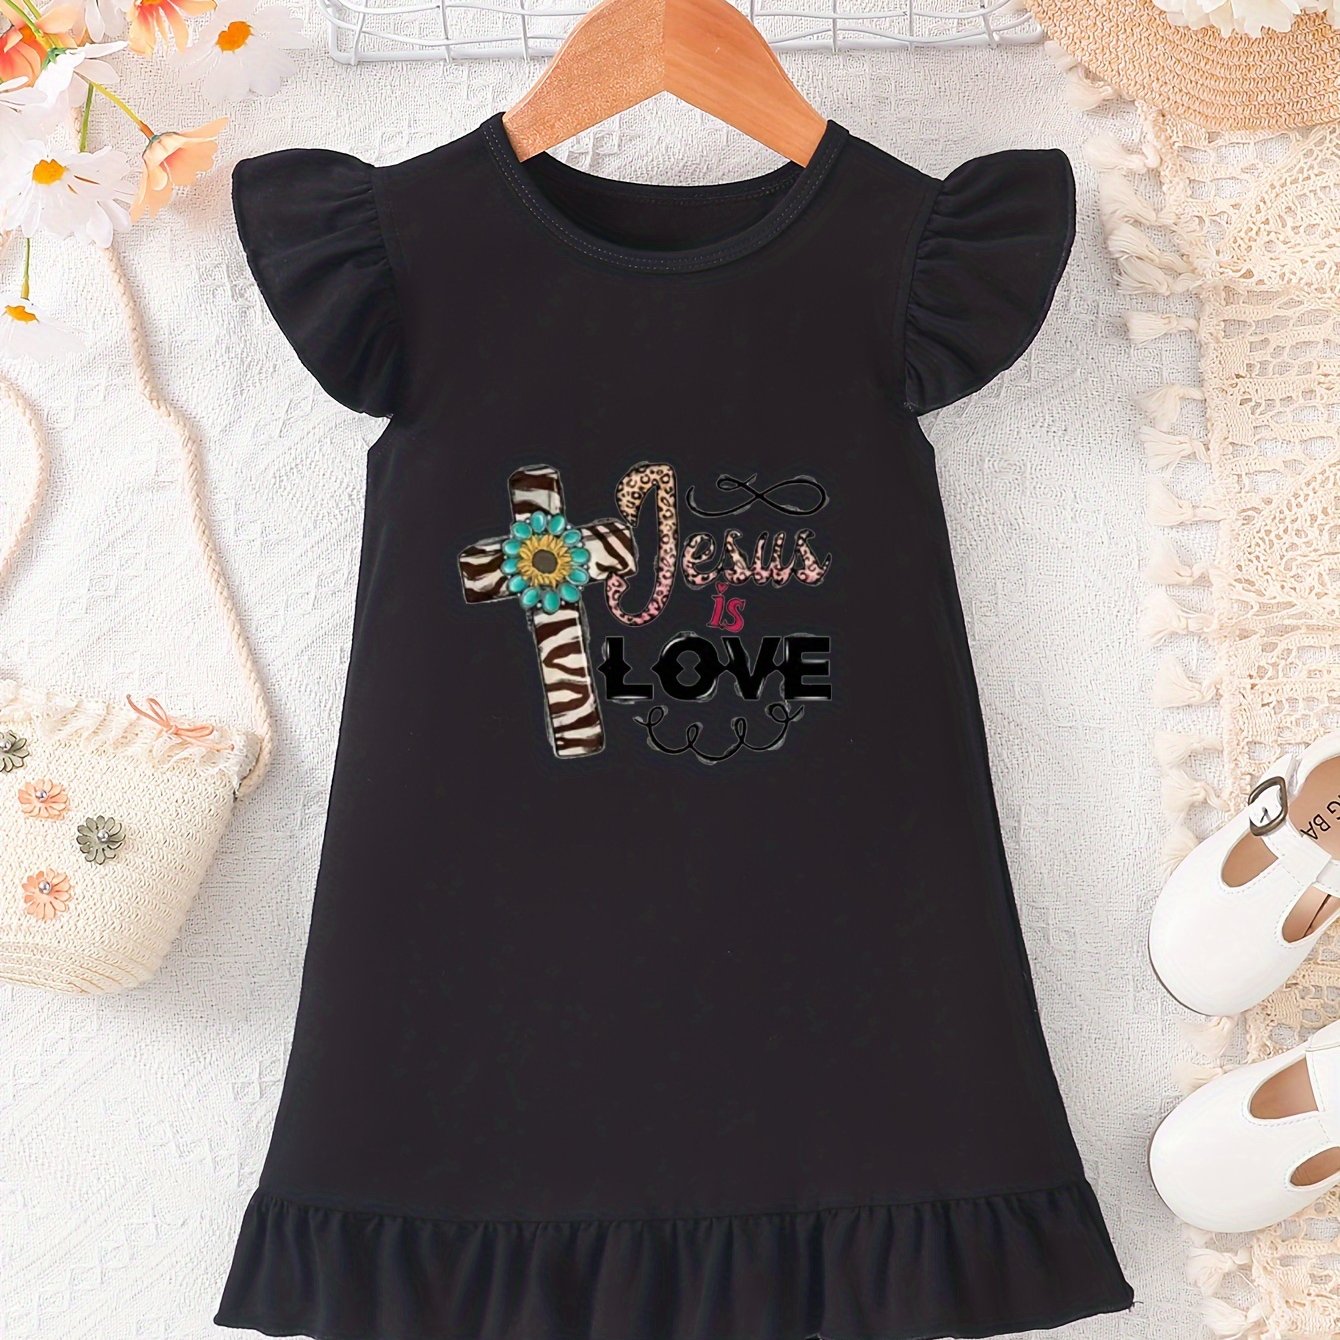 Jesus Is Love Christian Toddler Dress claimedbygoddesigns